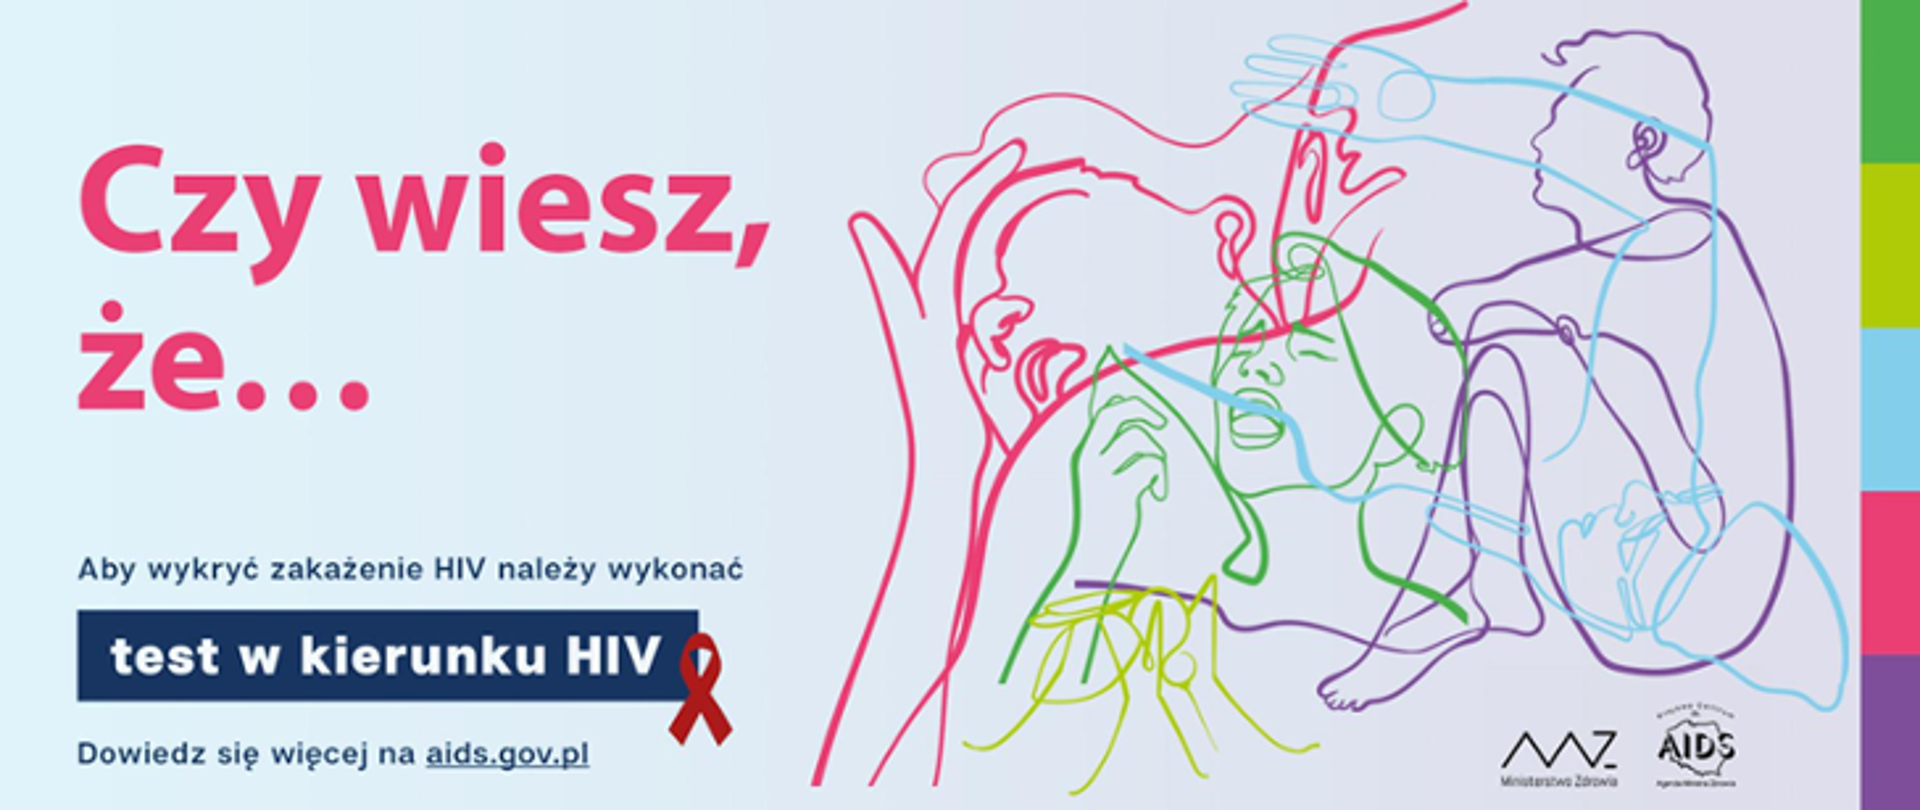 Napis: Czy wiesz, że… , test w kierunku HIV oraz grafika przedstawiająca obrys ludzi